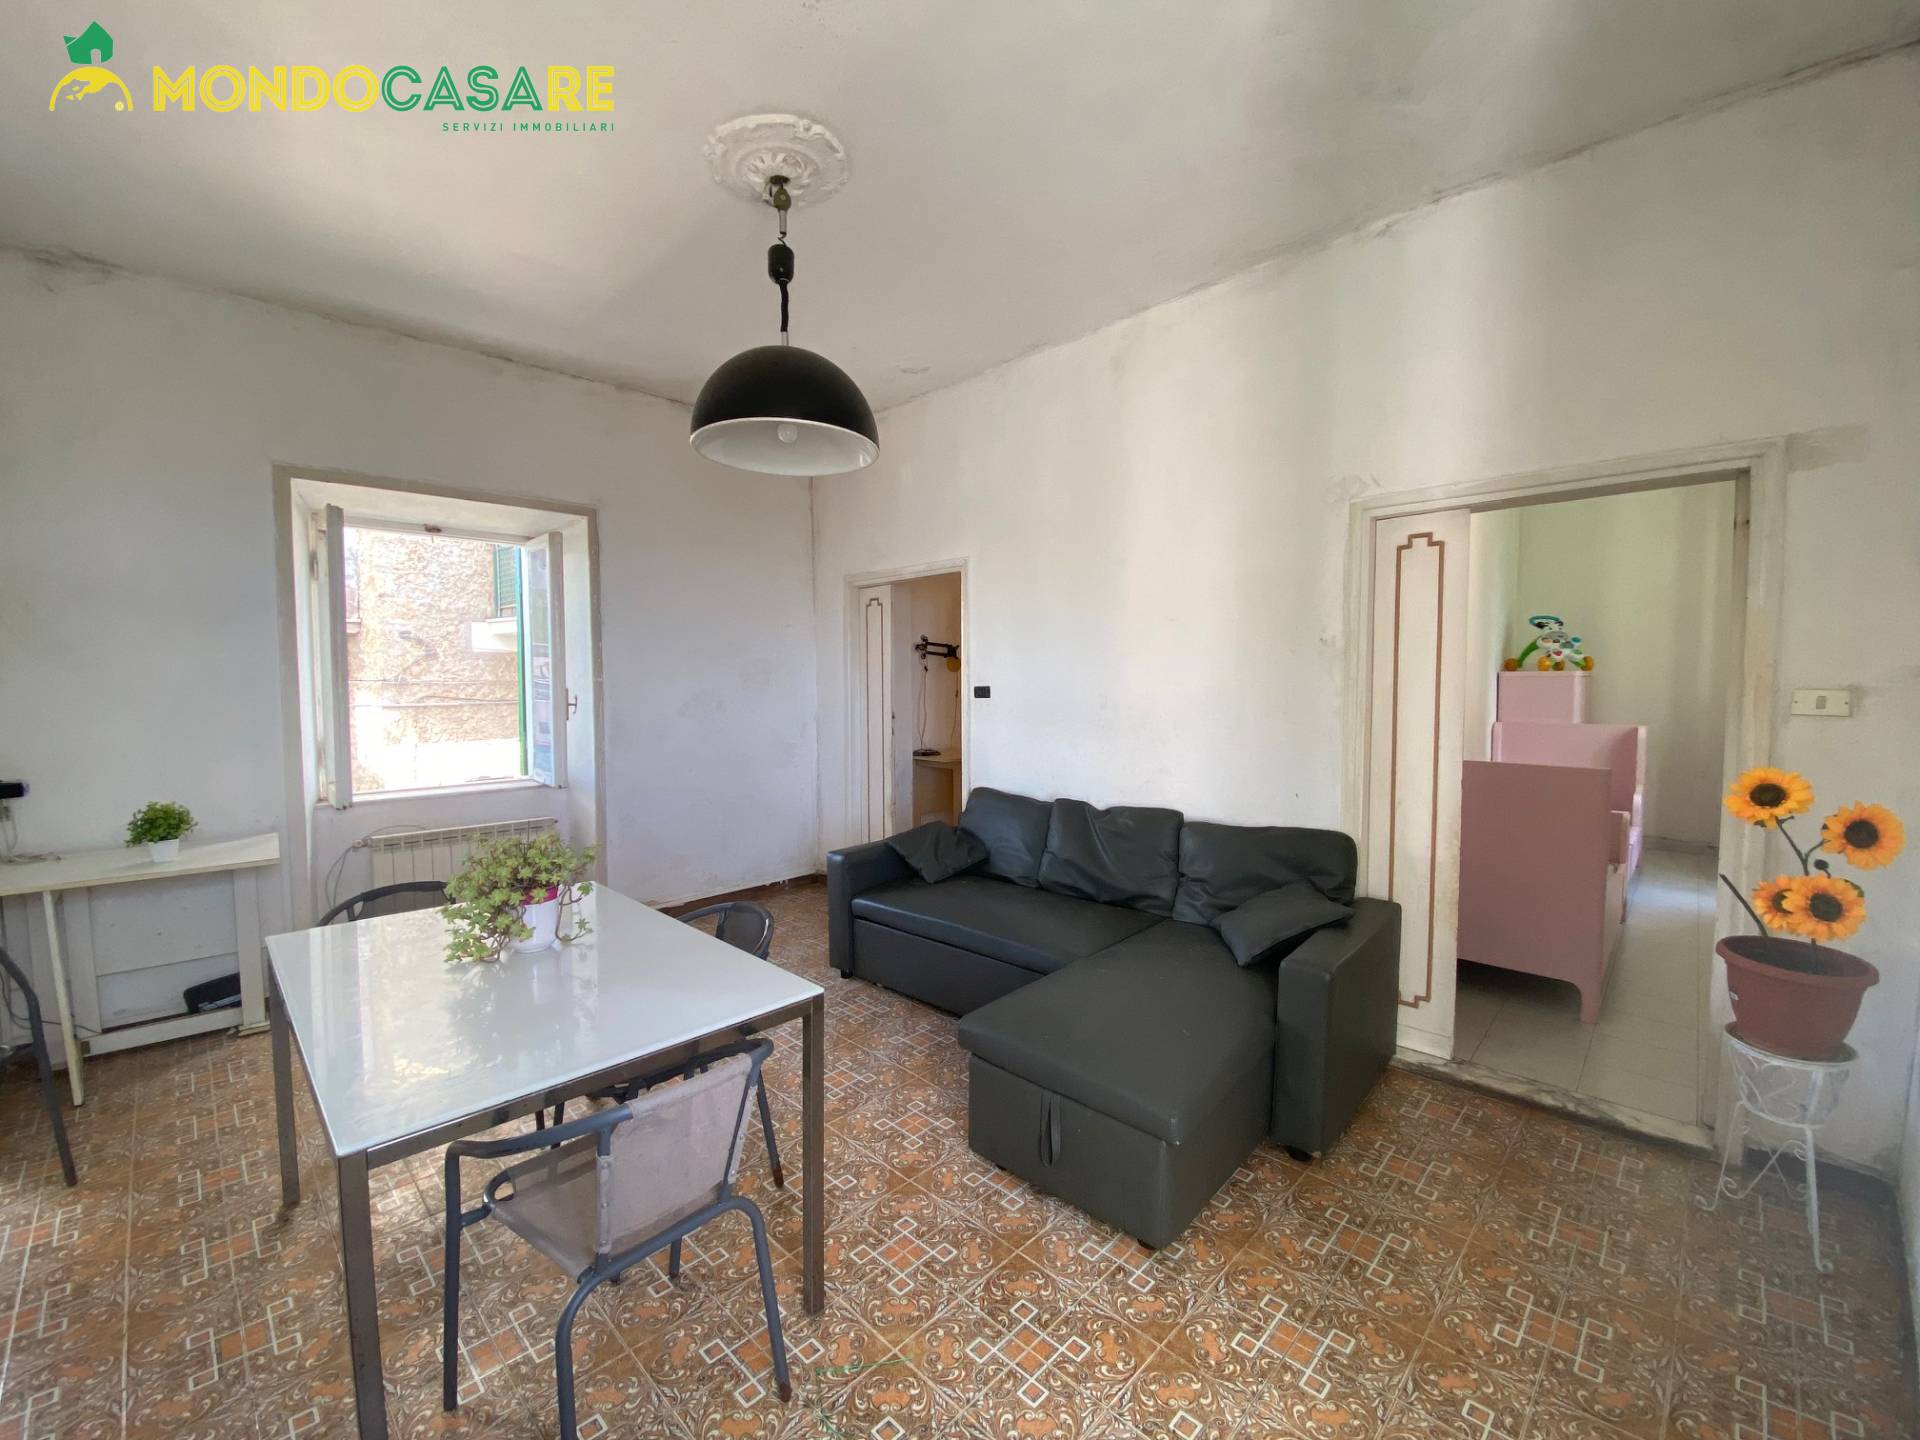 Appartamento in vendita a Palombara Sabina, 3 locali, prezzo € 49.500 | CambioCasa.it